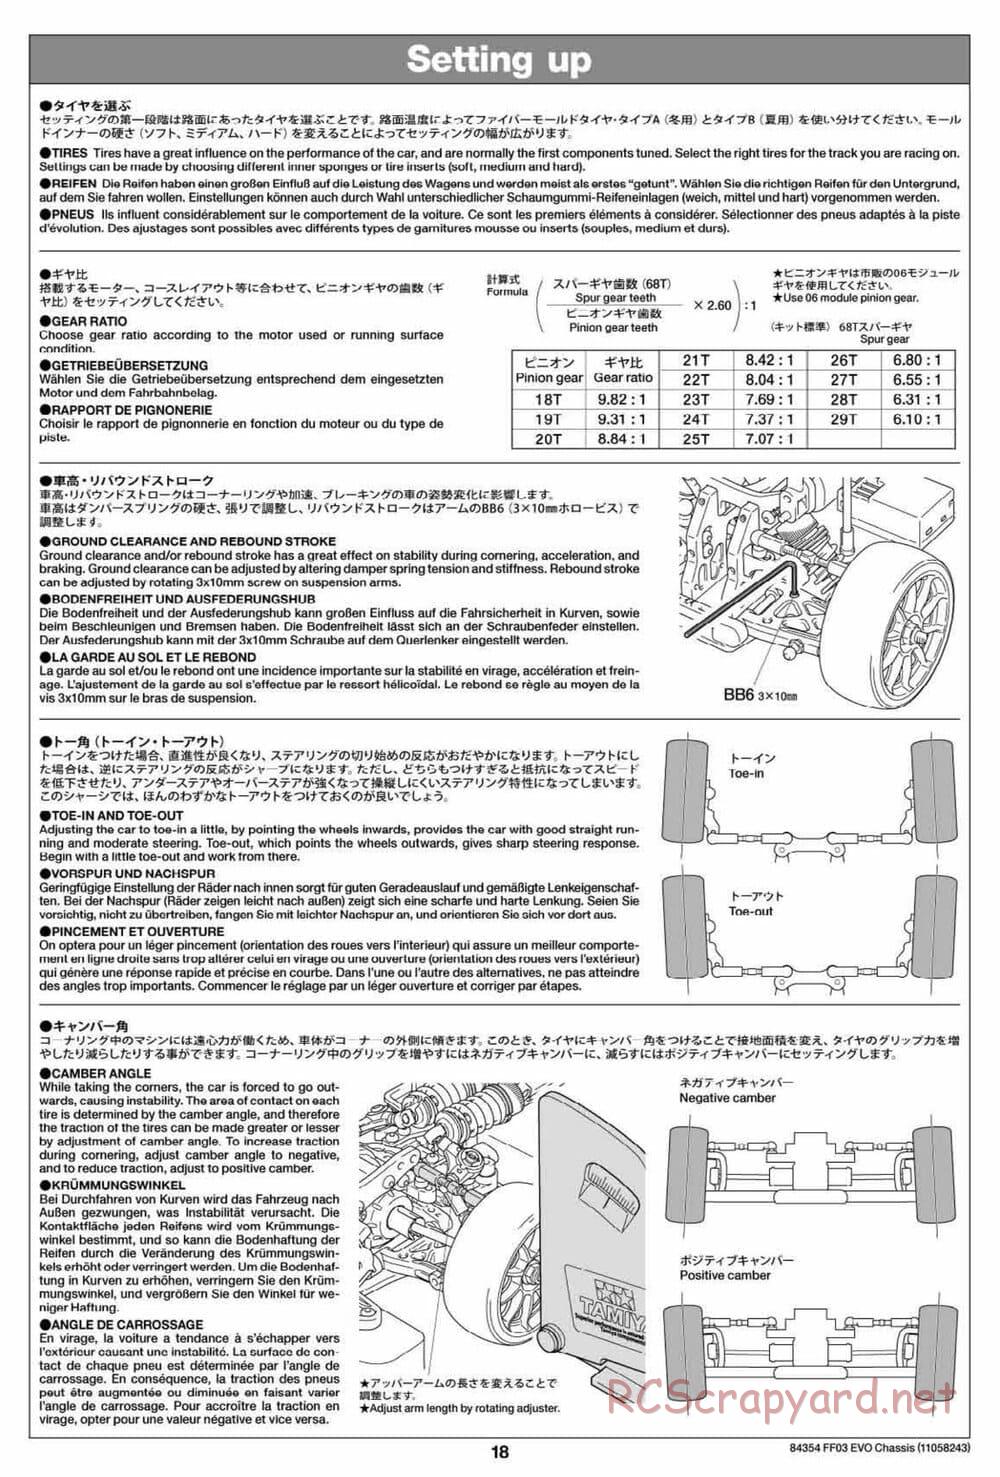 Tamiya - FF-03 Evo Chassis - Manual - Page 18